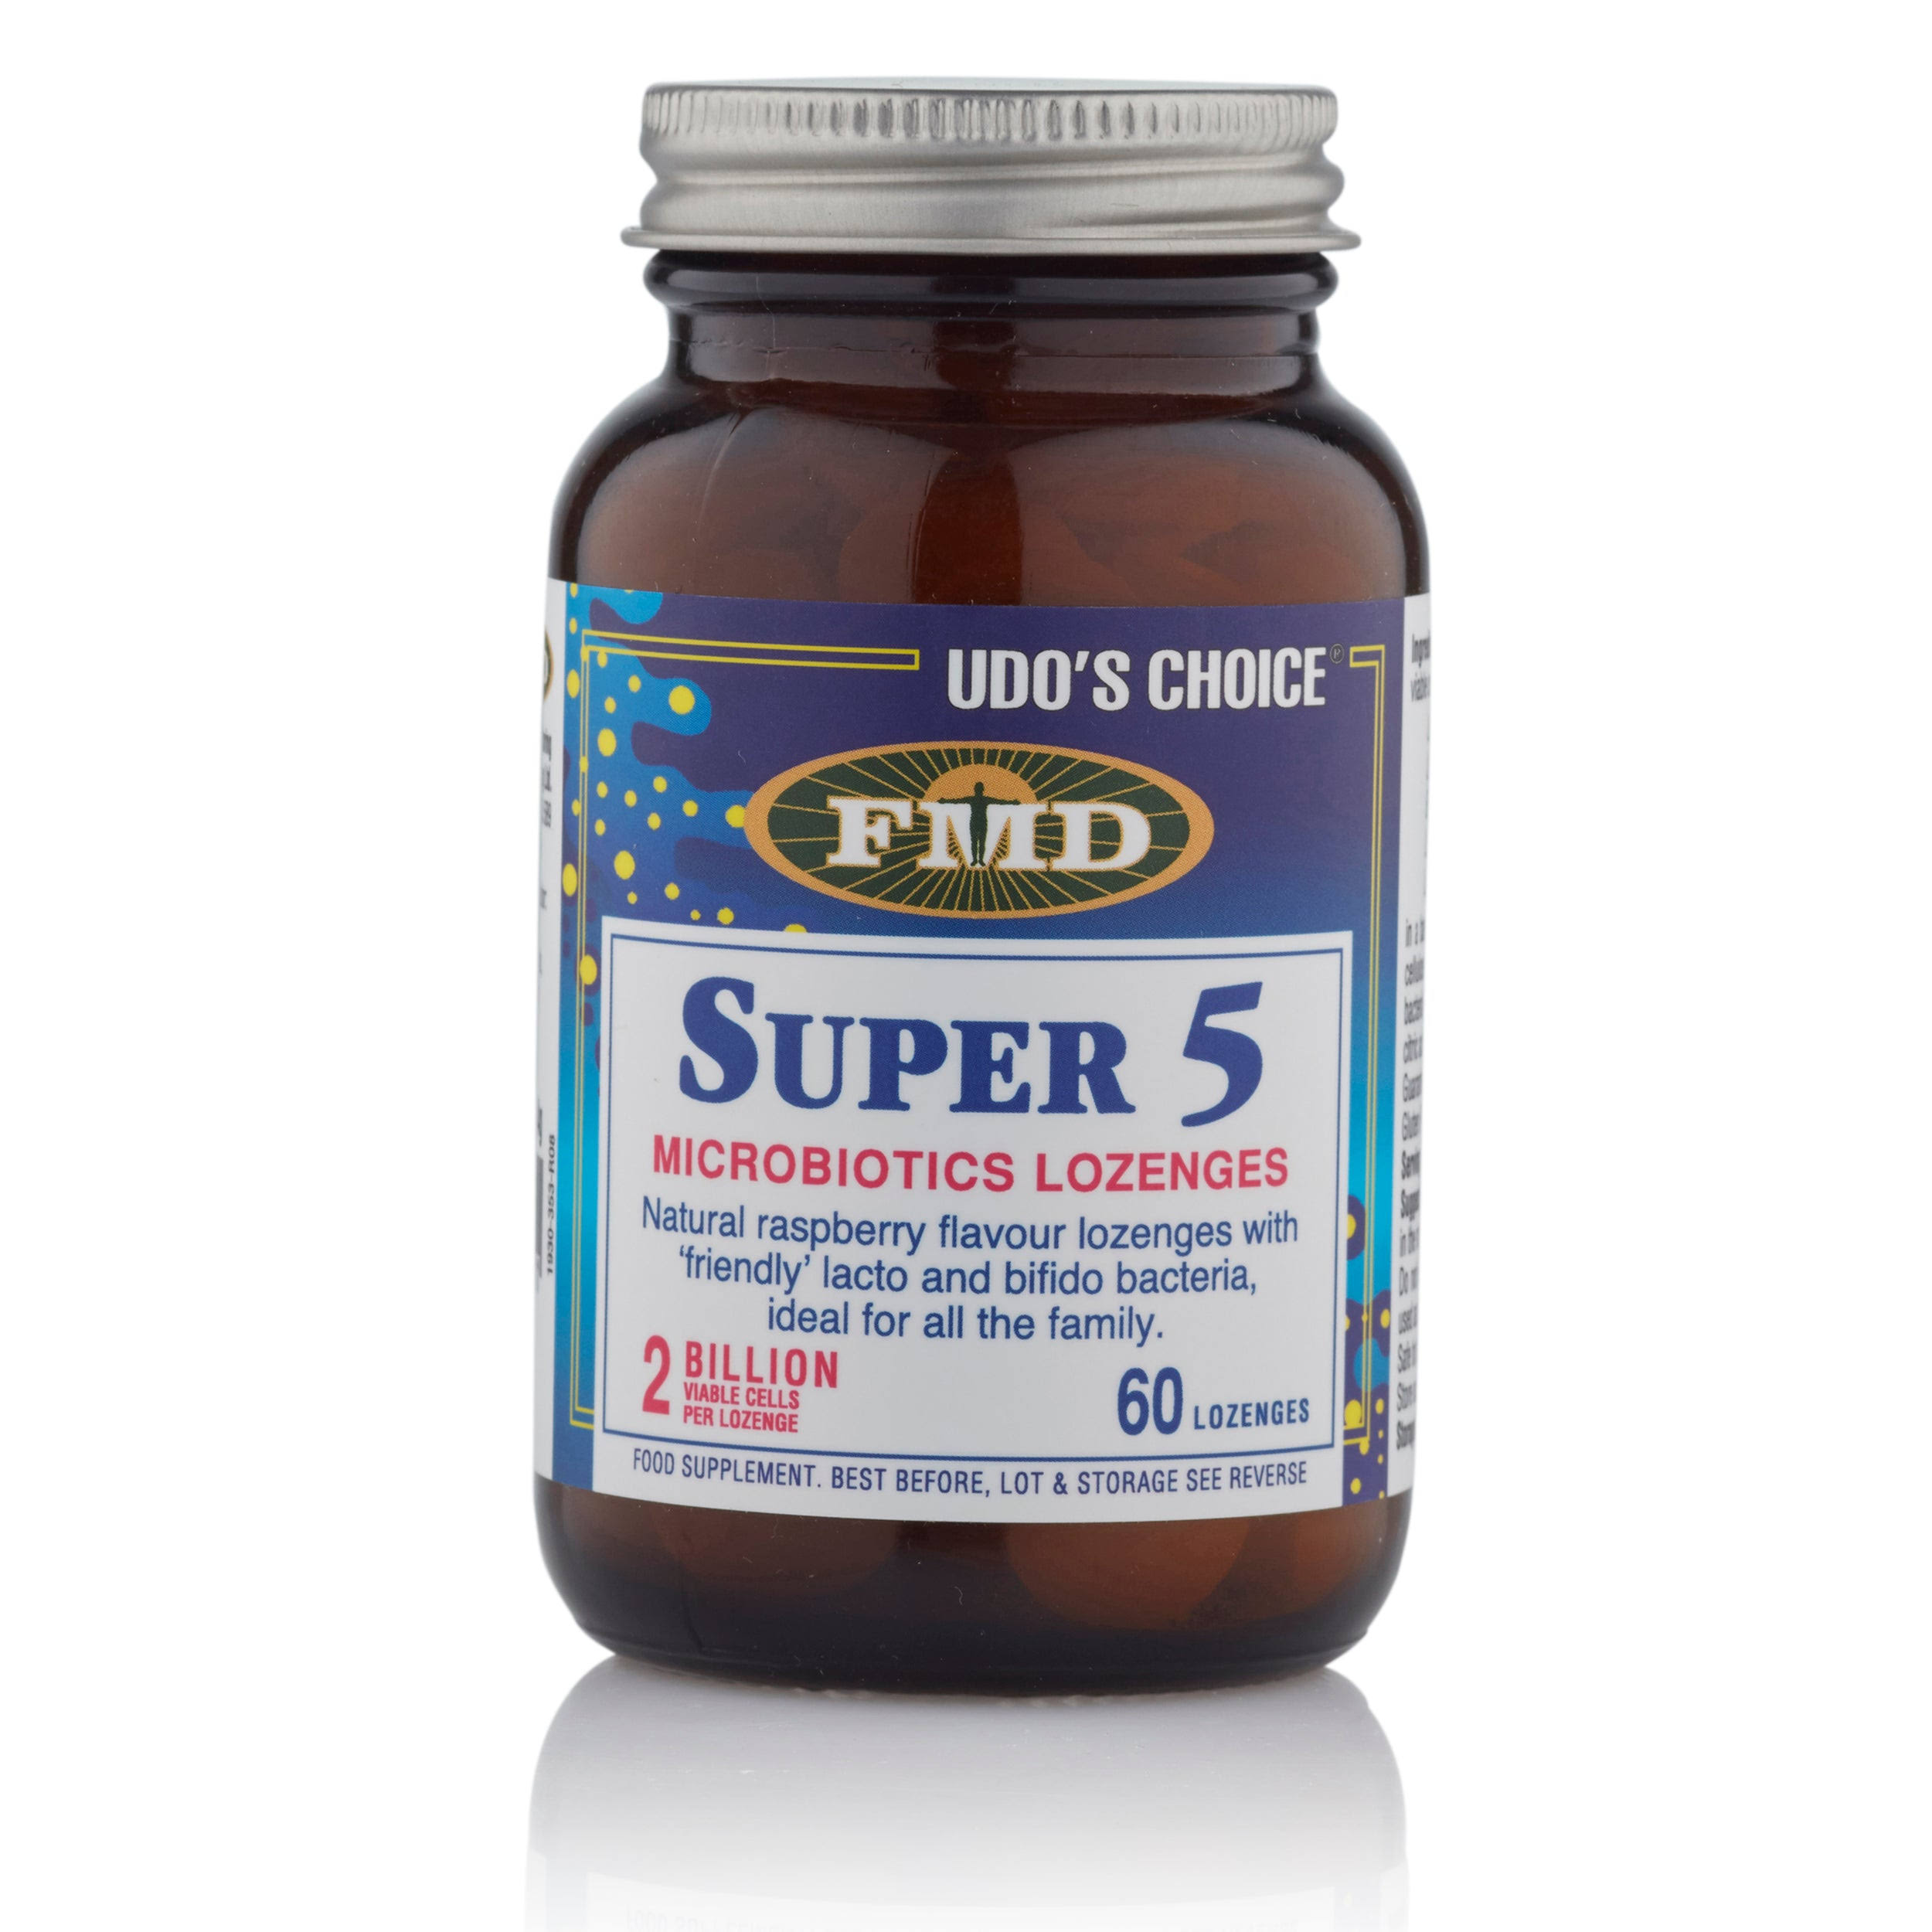 Udo's Choice - Super 5 Microbiotic Lozenges (60 Lozenges)